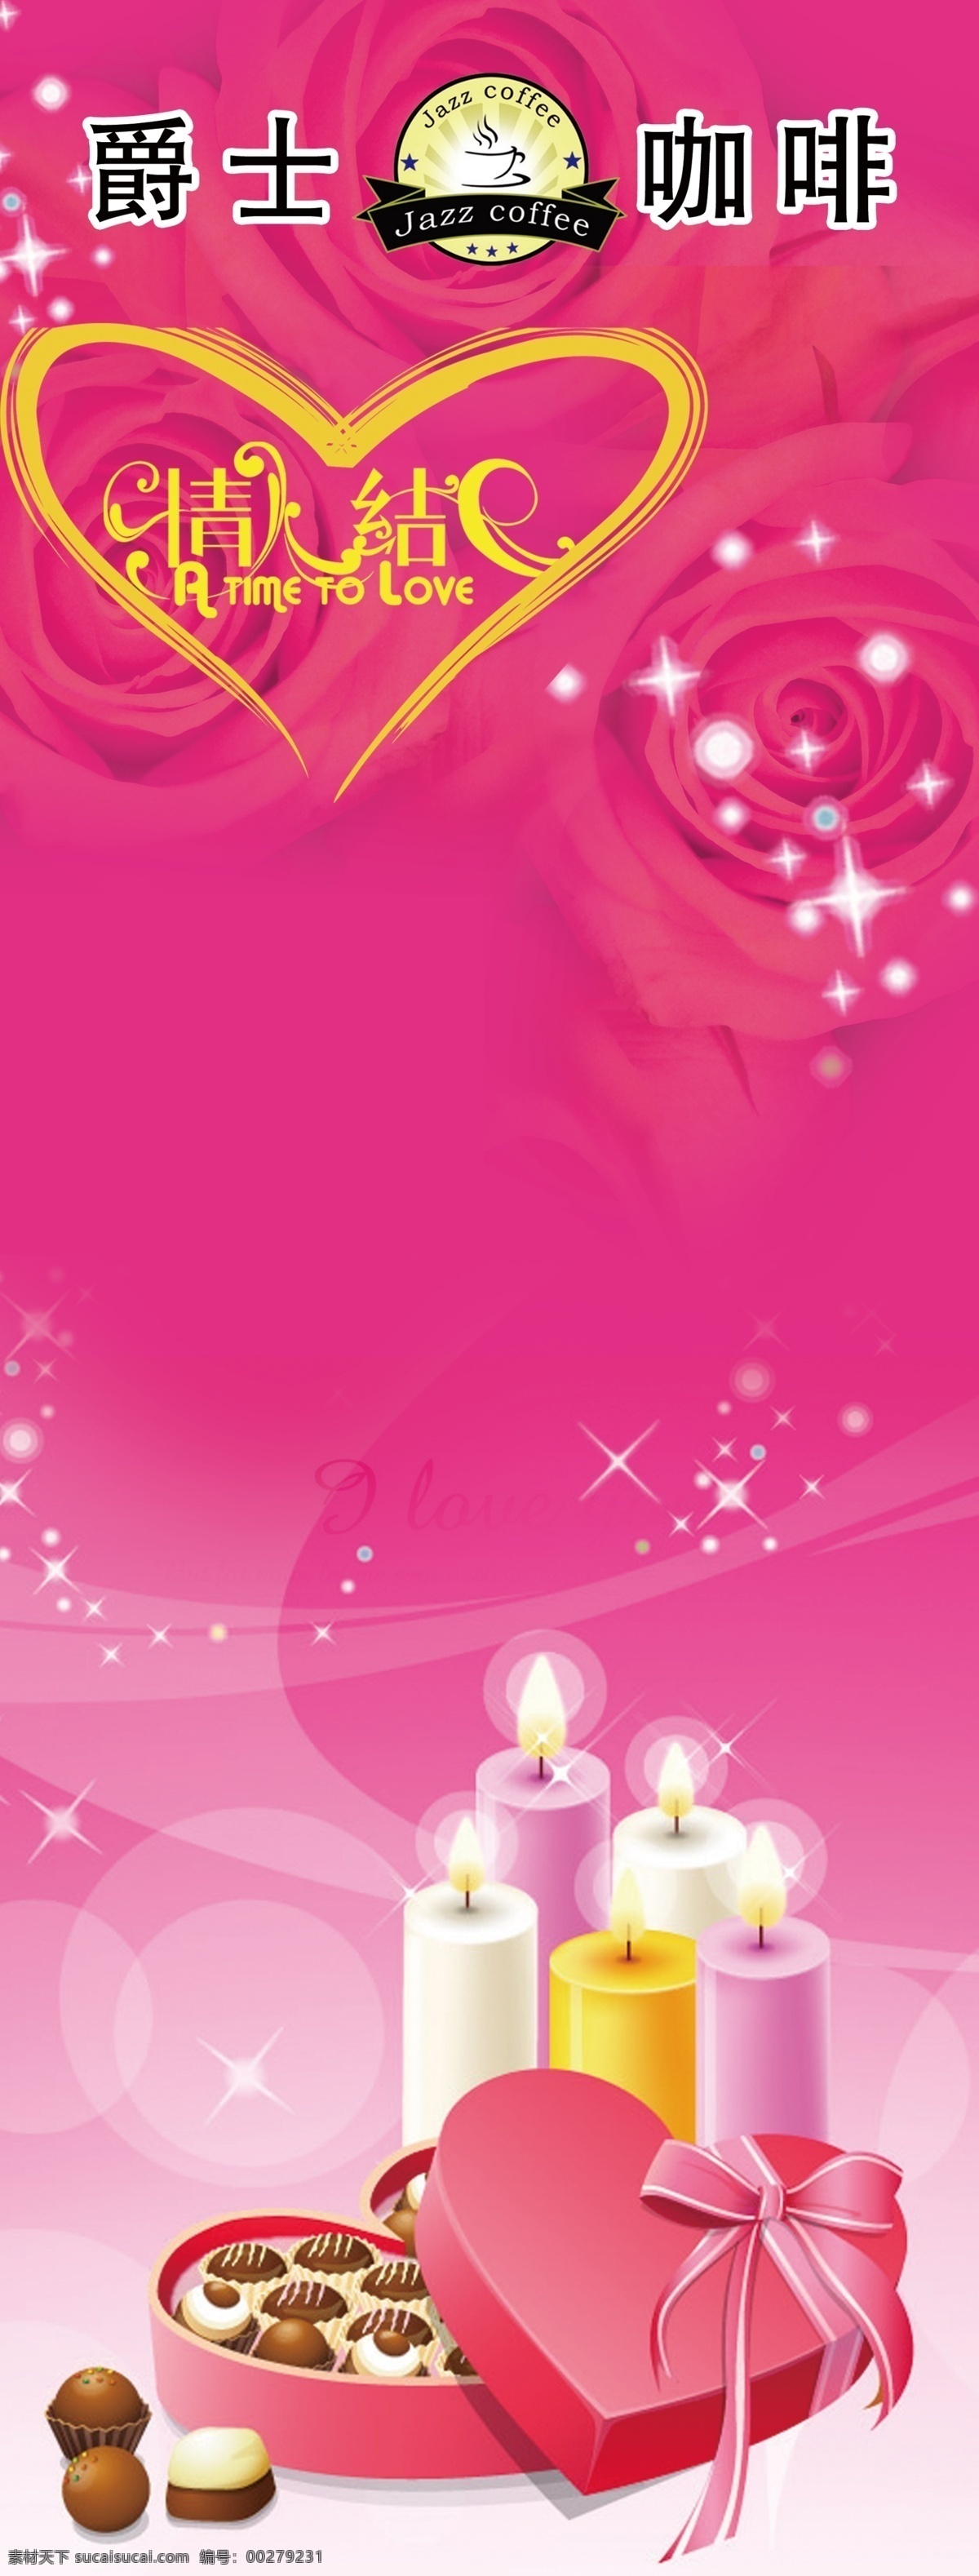 粉色背景 心形 鲜花背景 蜡烛 巧克力盒 巧克力 展架背景 易拉宝背景 广告背景 背景素材 分层 源文件